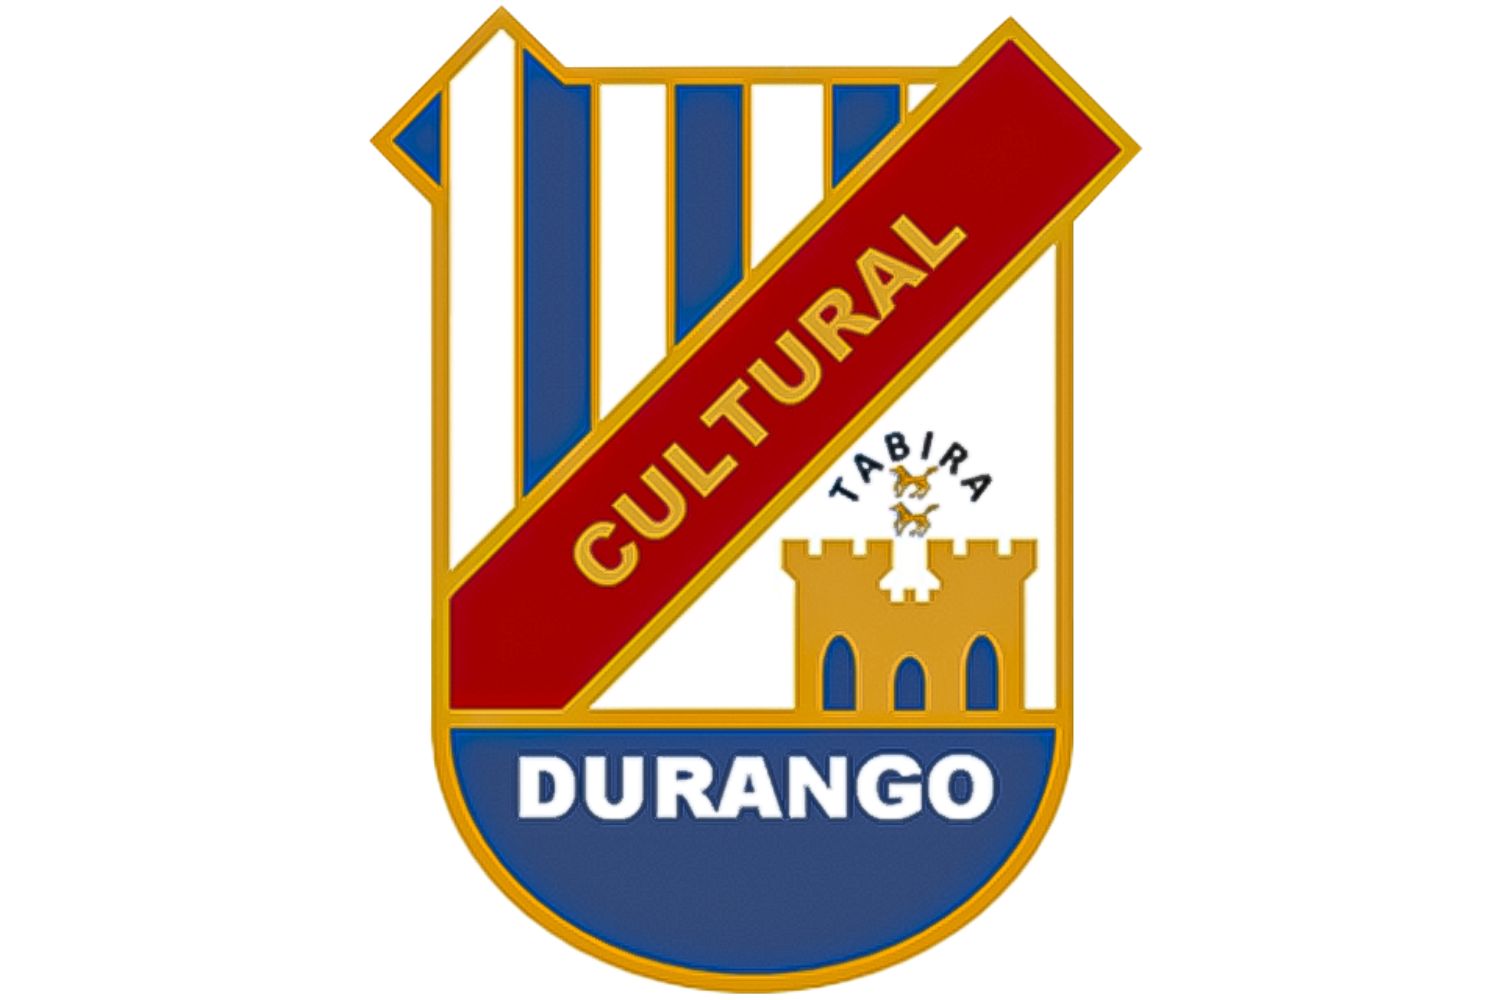 scd-durango-10-football-club-facts